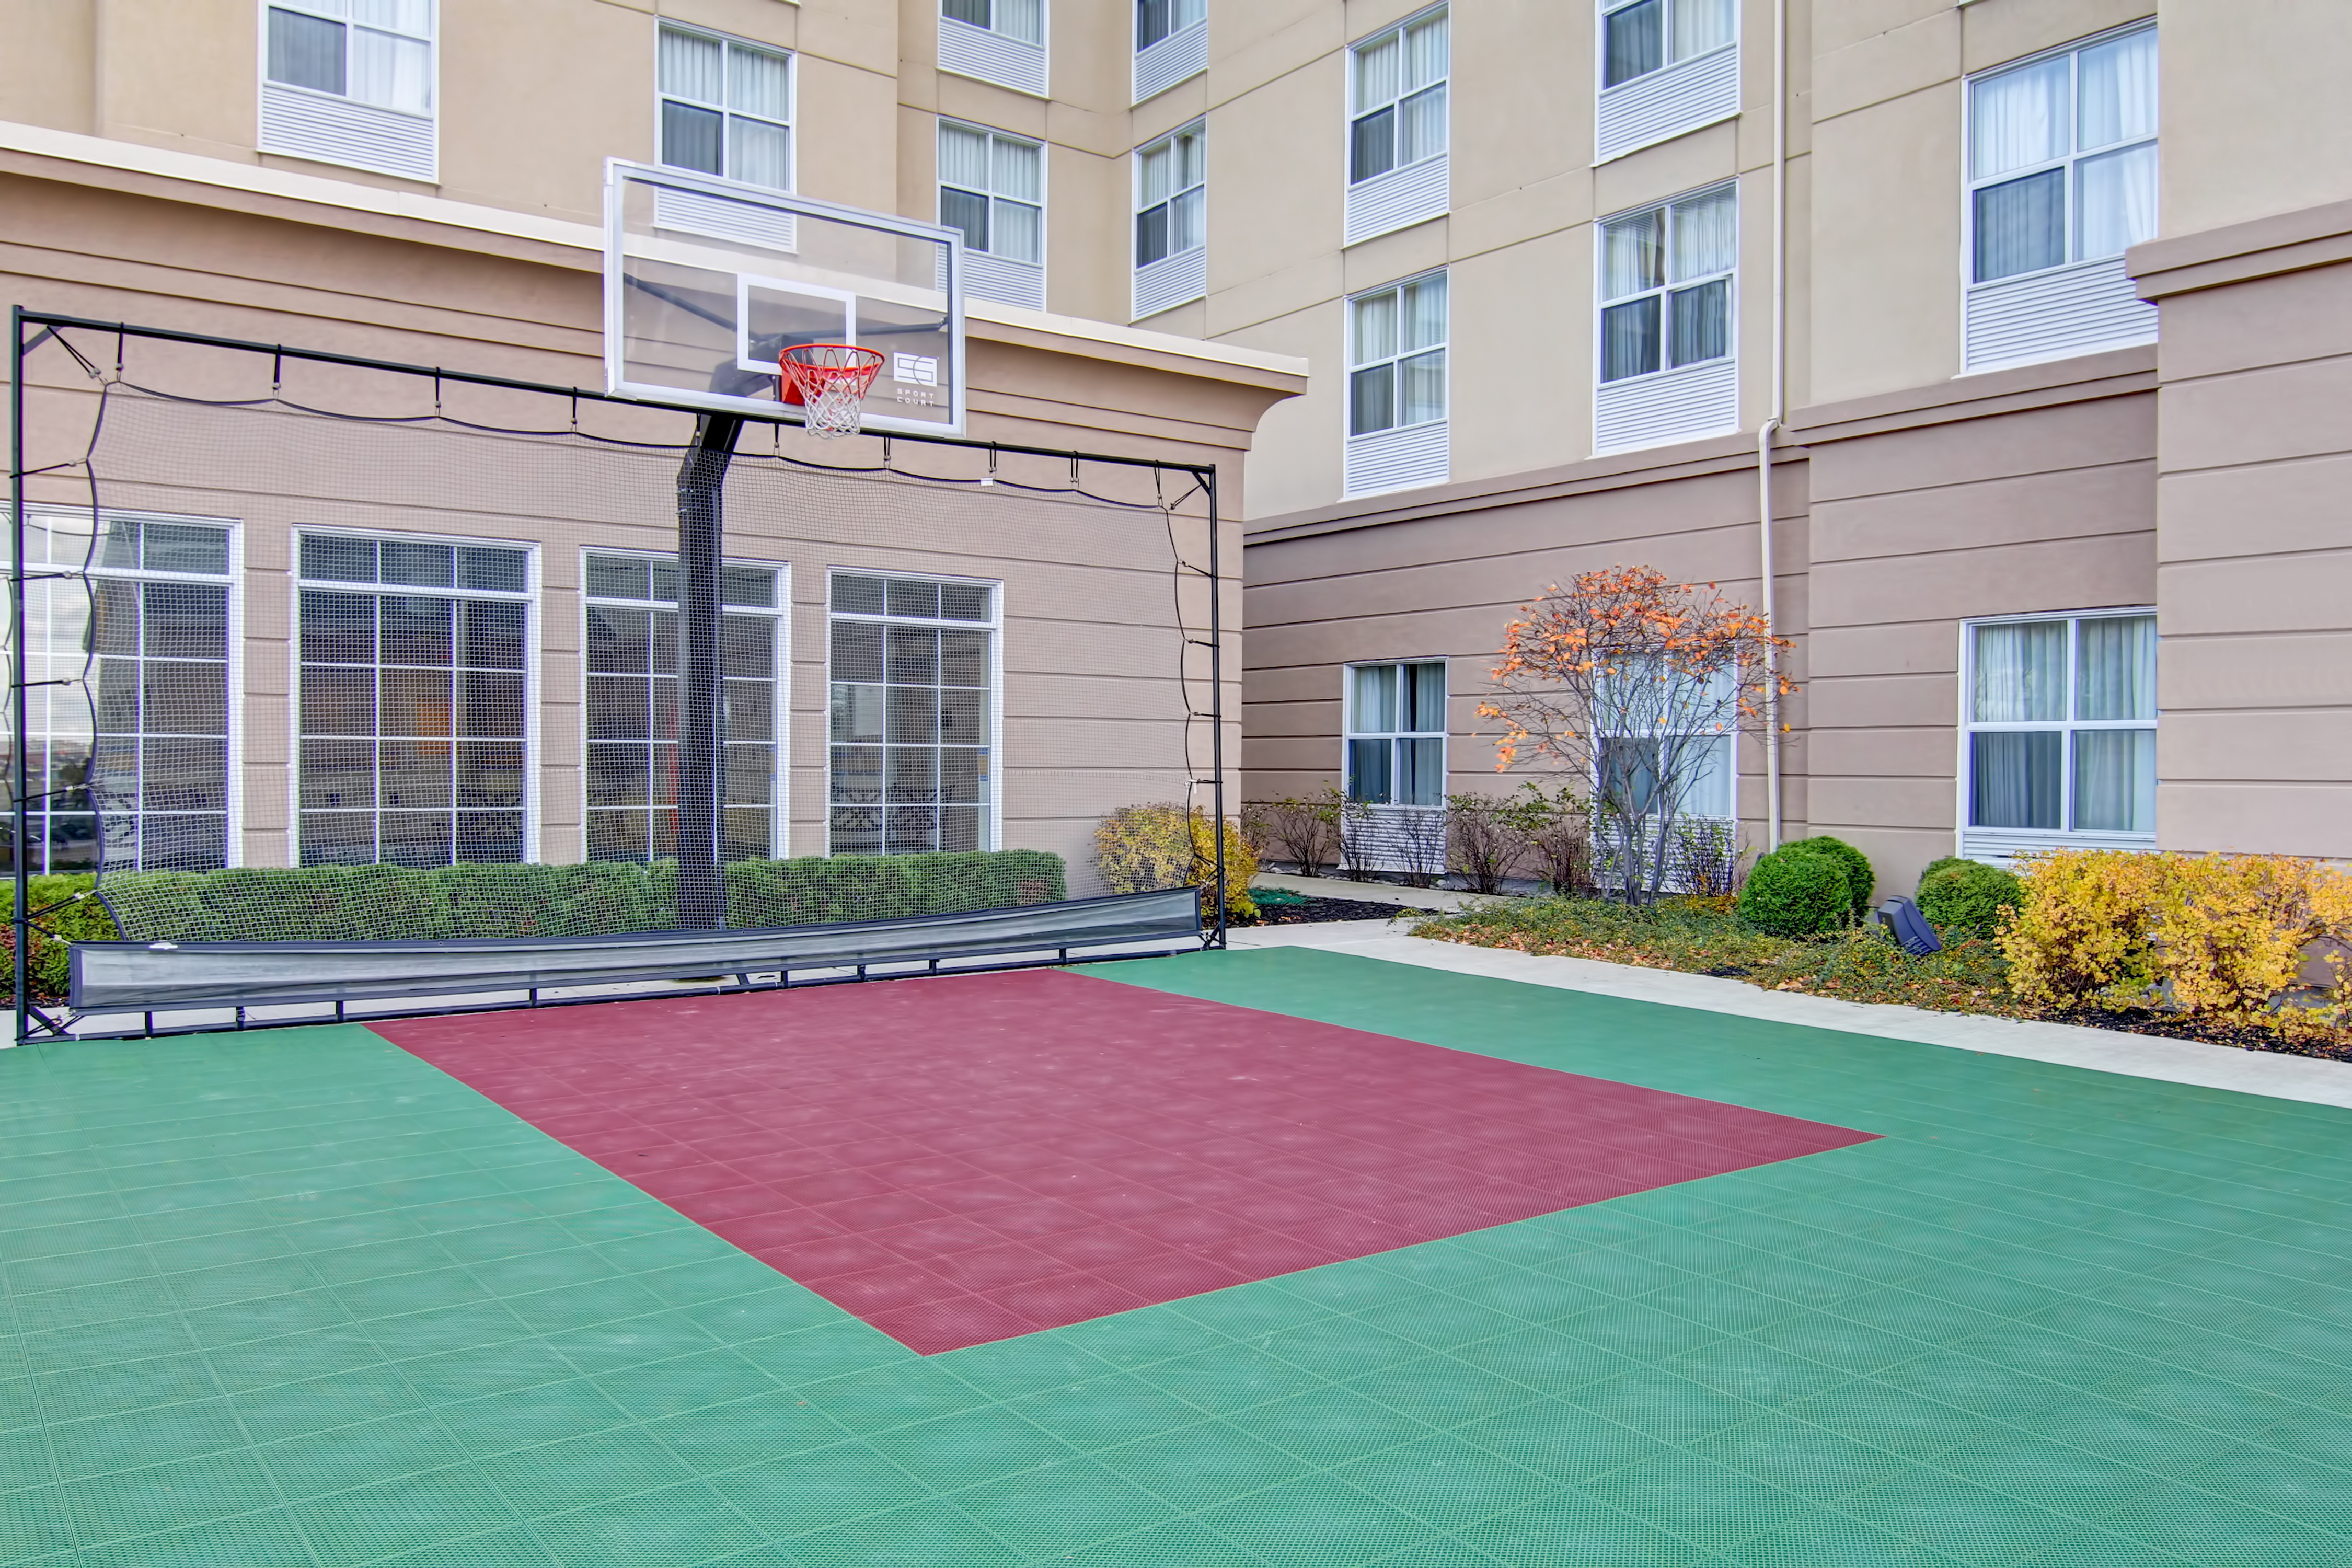 Terrain de sport polyvalent en extérieur avec filet de basket-ball